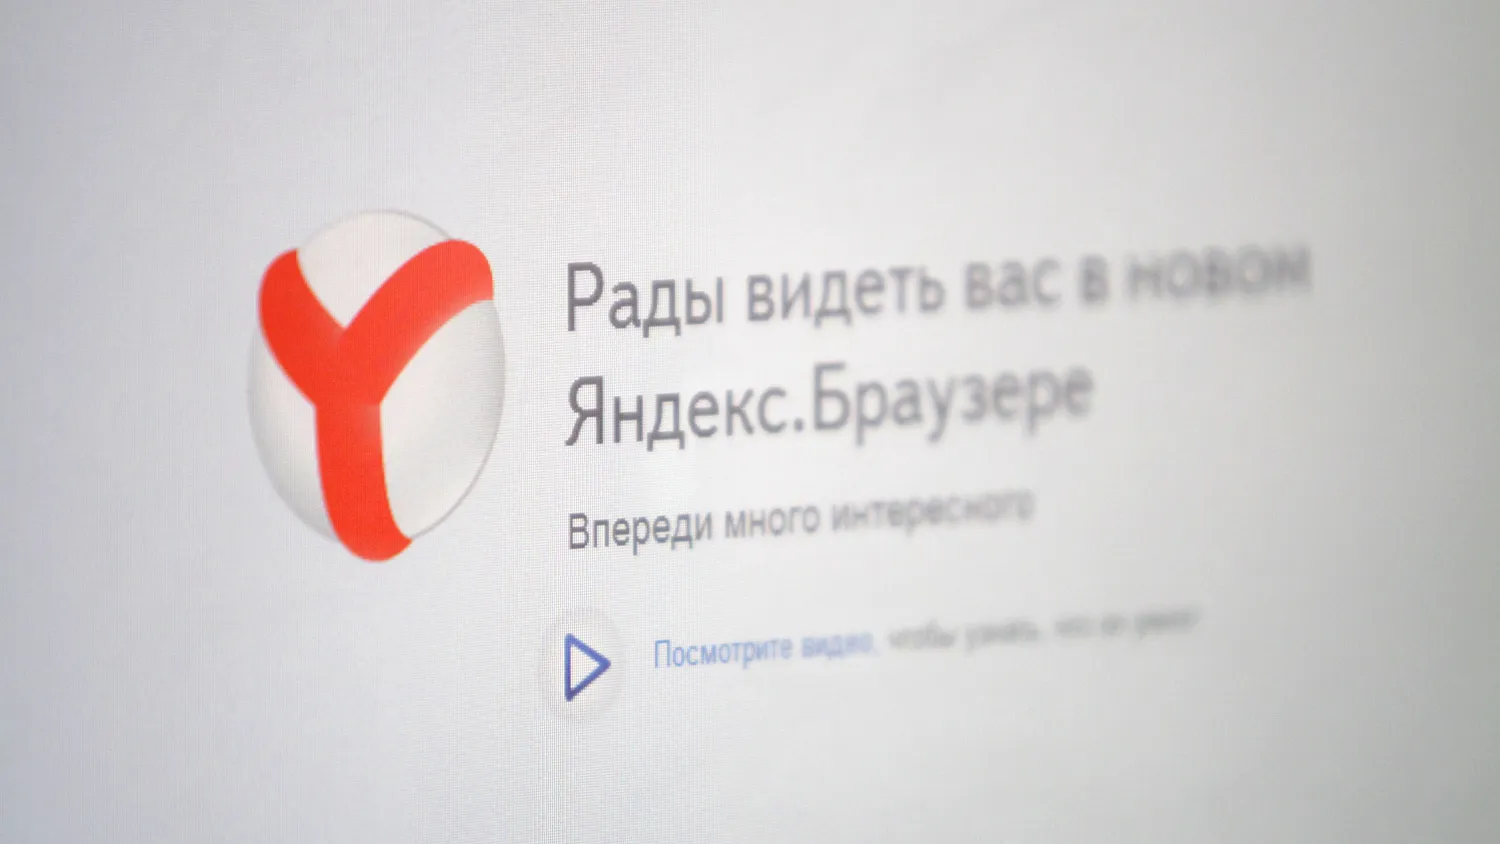 Аудитория «Яндекс.Браузера» выросла до 10 млн пользователей в неделю